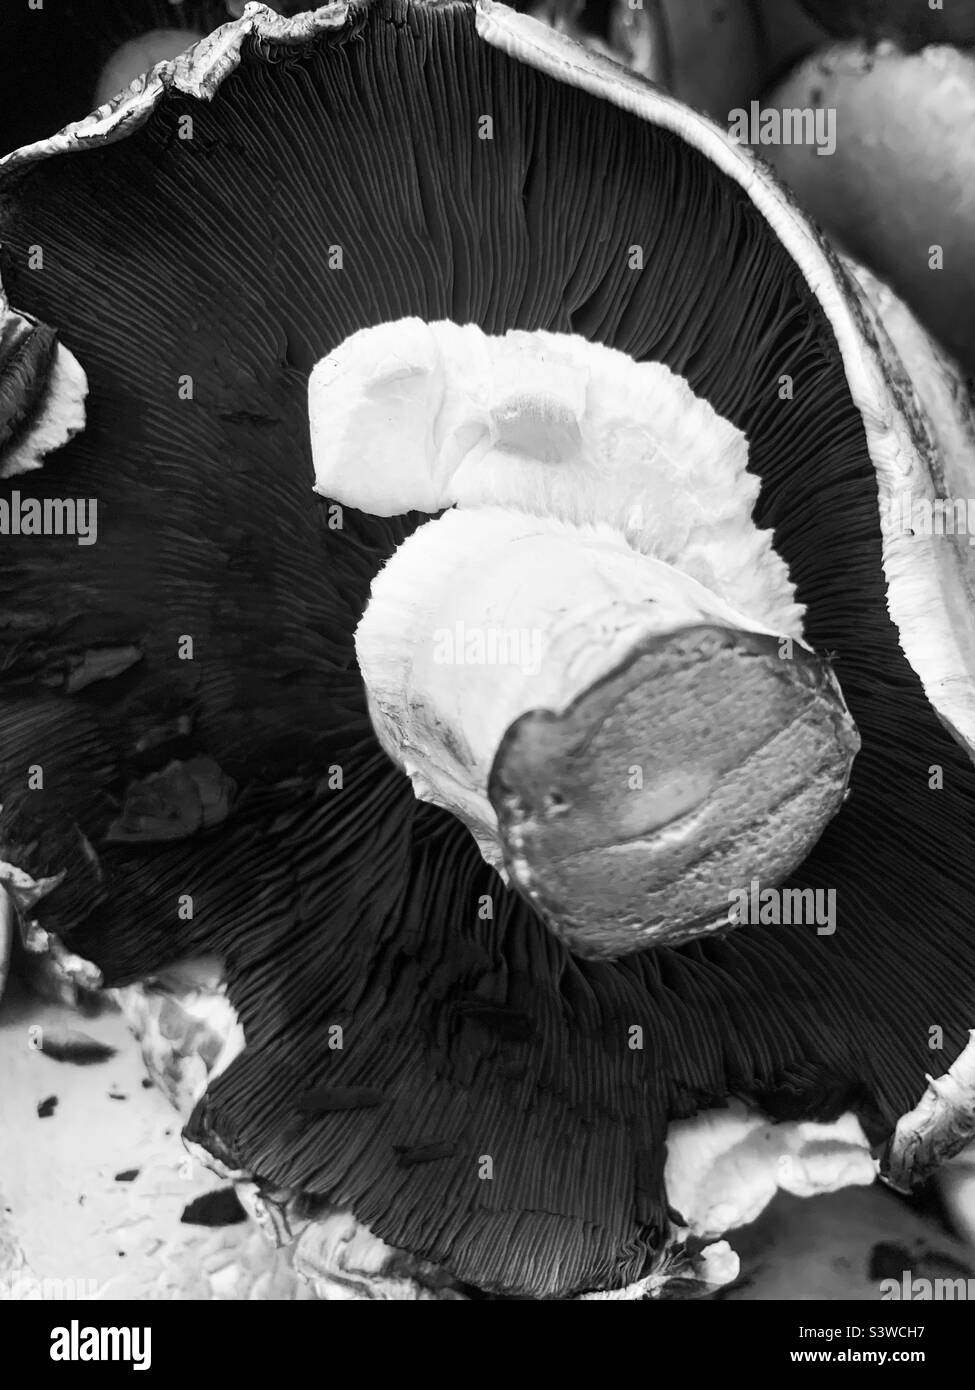 Der Boden eines riesigen portobello-Pilzes mit Stiel und Kappe in schwarz und weiß. Stockfoto